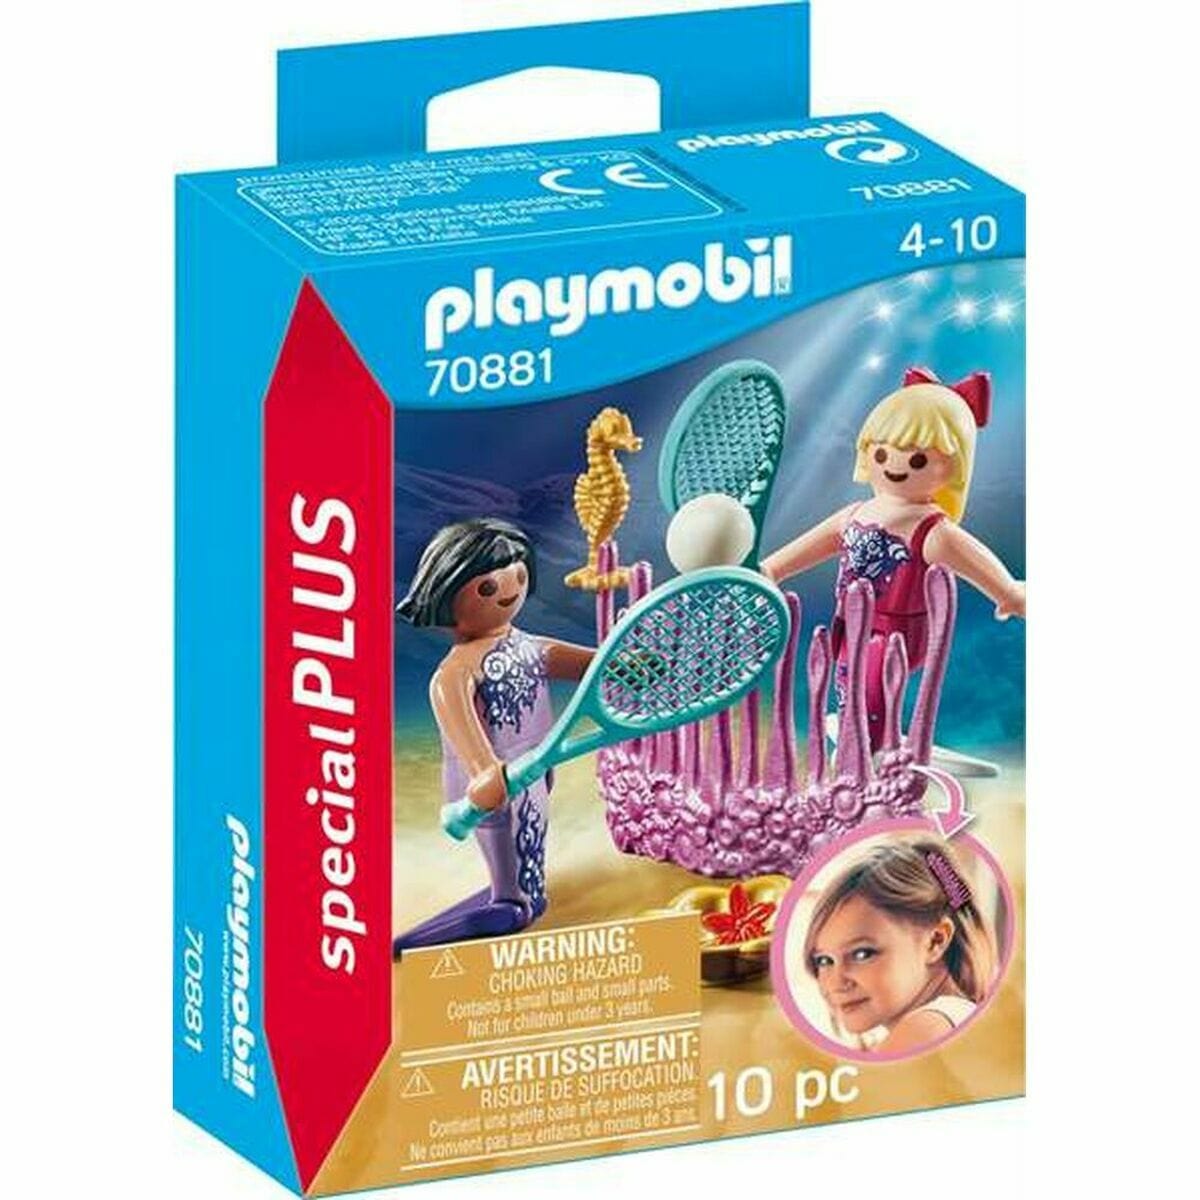 Playmobil Spielzeug | Kostüme > Spielzeug und Spiele > Weiteres spielzeug Playset Playmobil 70881 Sirene 10 Stücke Tennis 70881 (10 pcs)